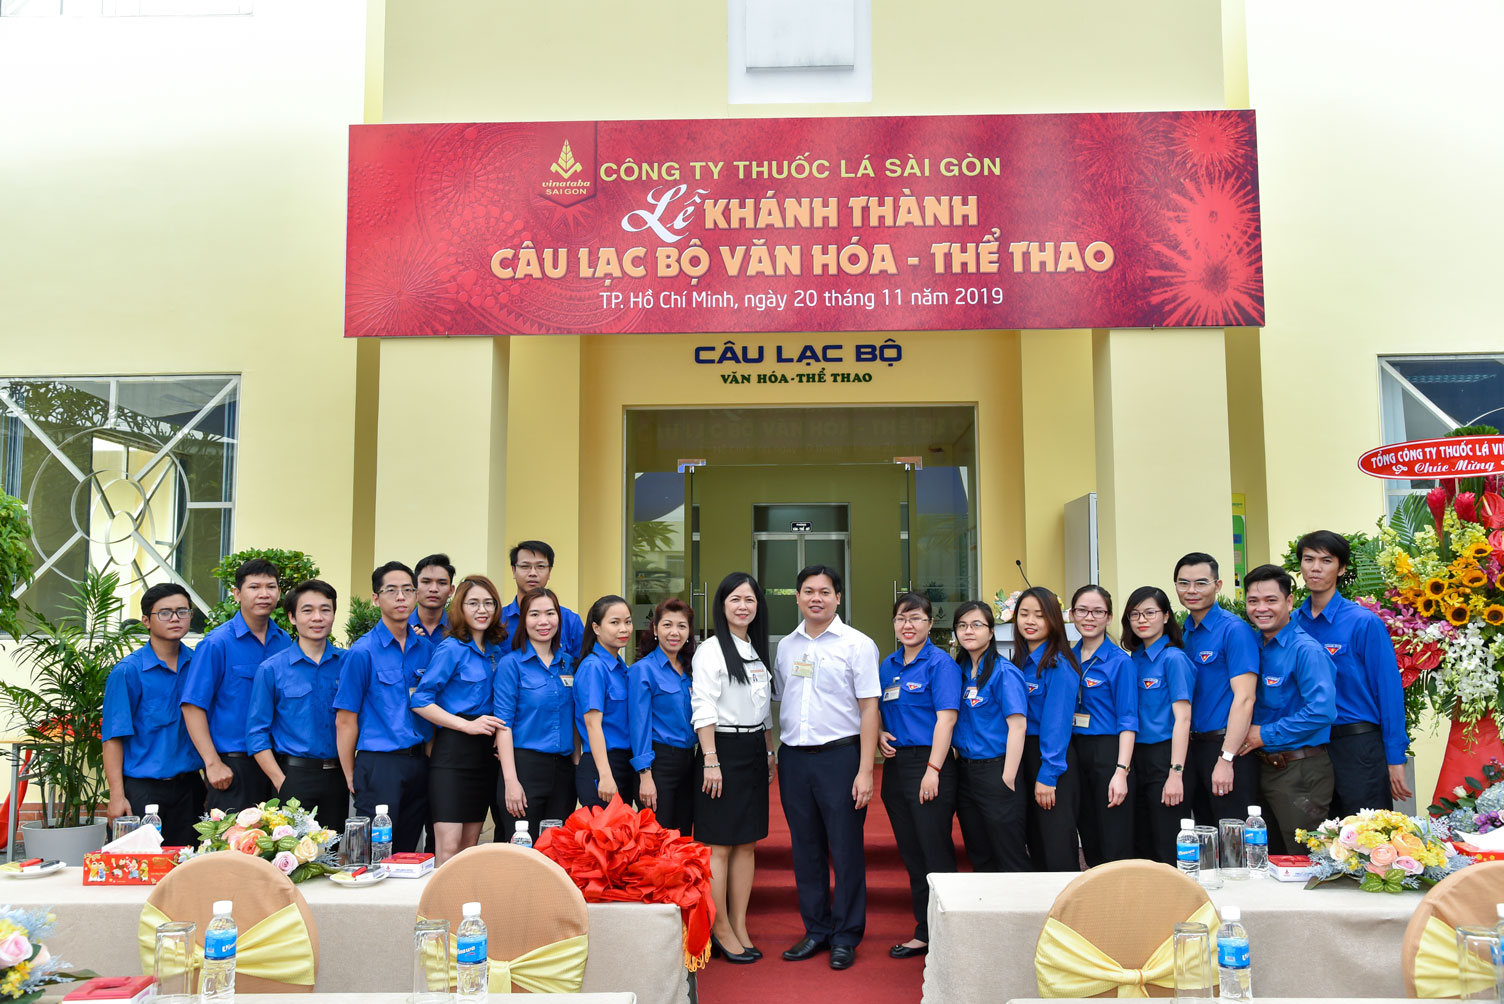 Lễ khánh thành Câu lạc bộ văn hóa thể thao Công ty Thuốc lá Sài Gòn